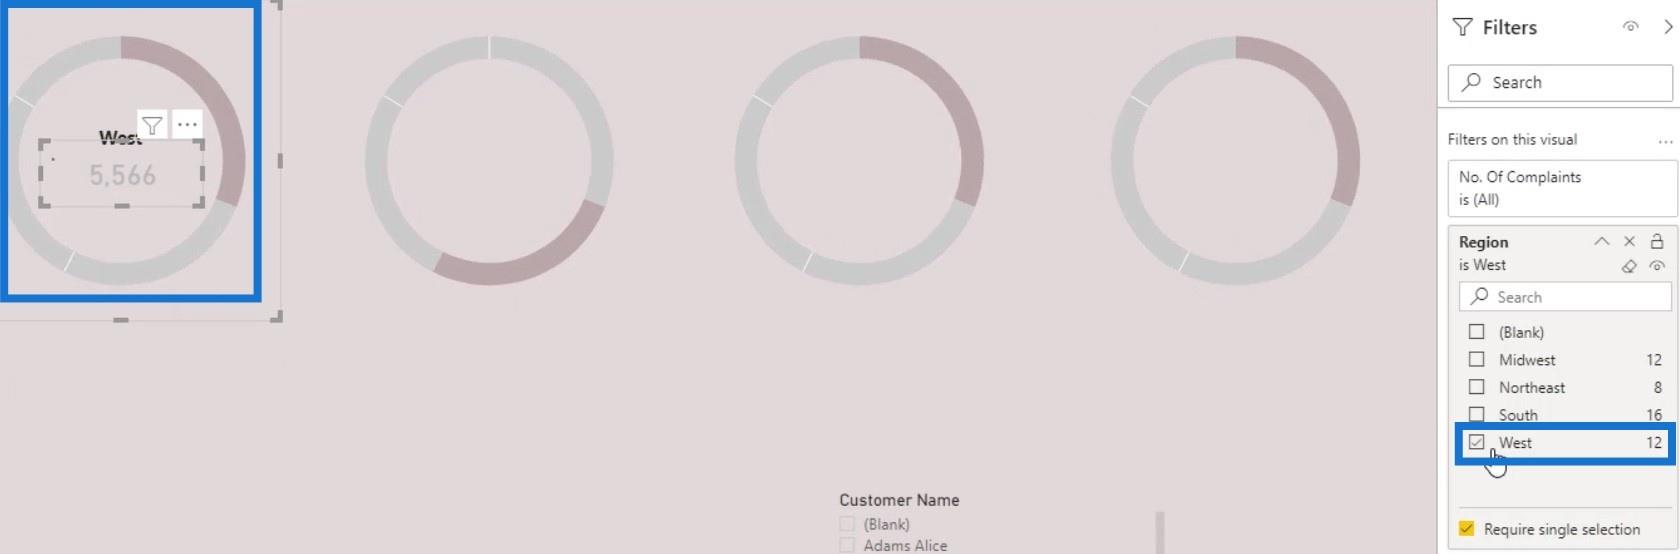 LuckyTemplates Donut Chart: Vlastný návod na vizualizáciu